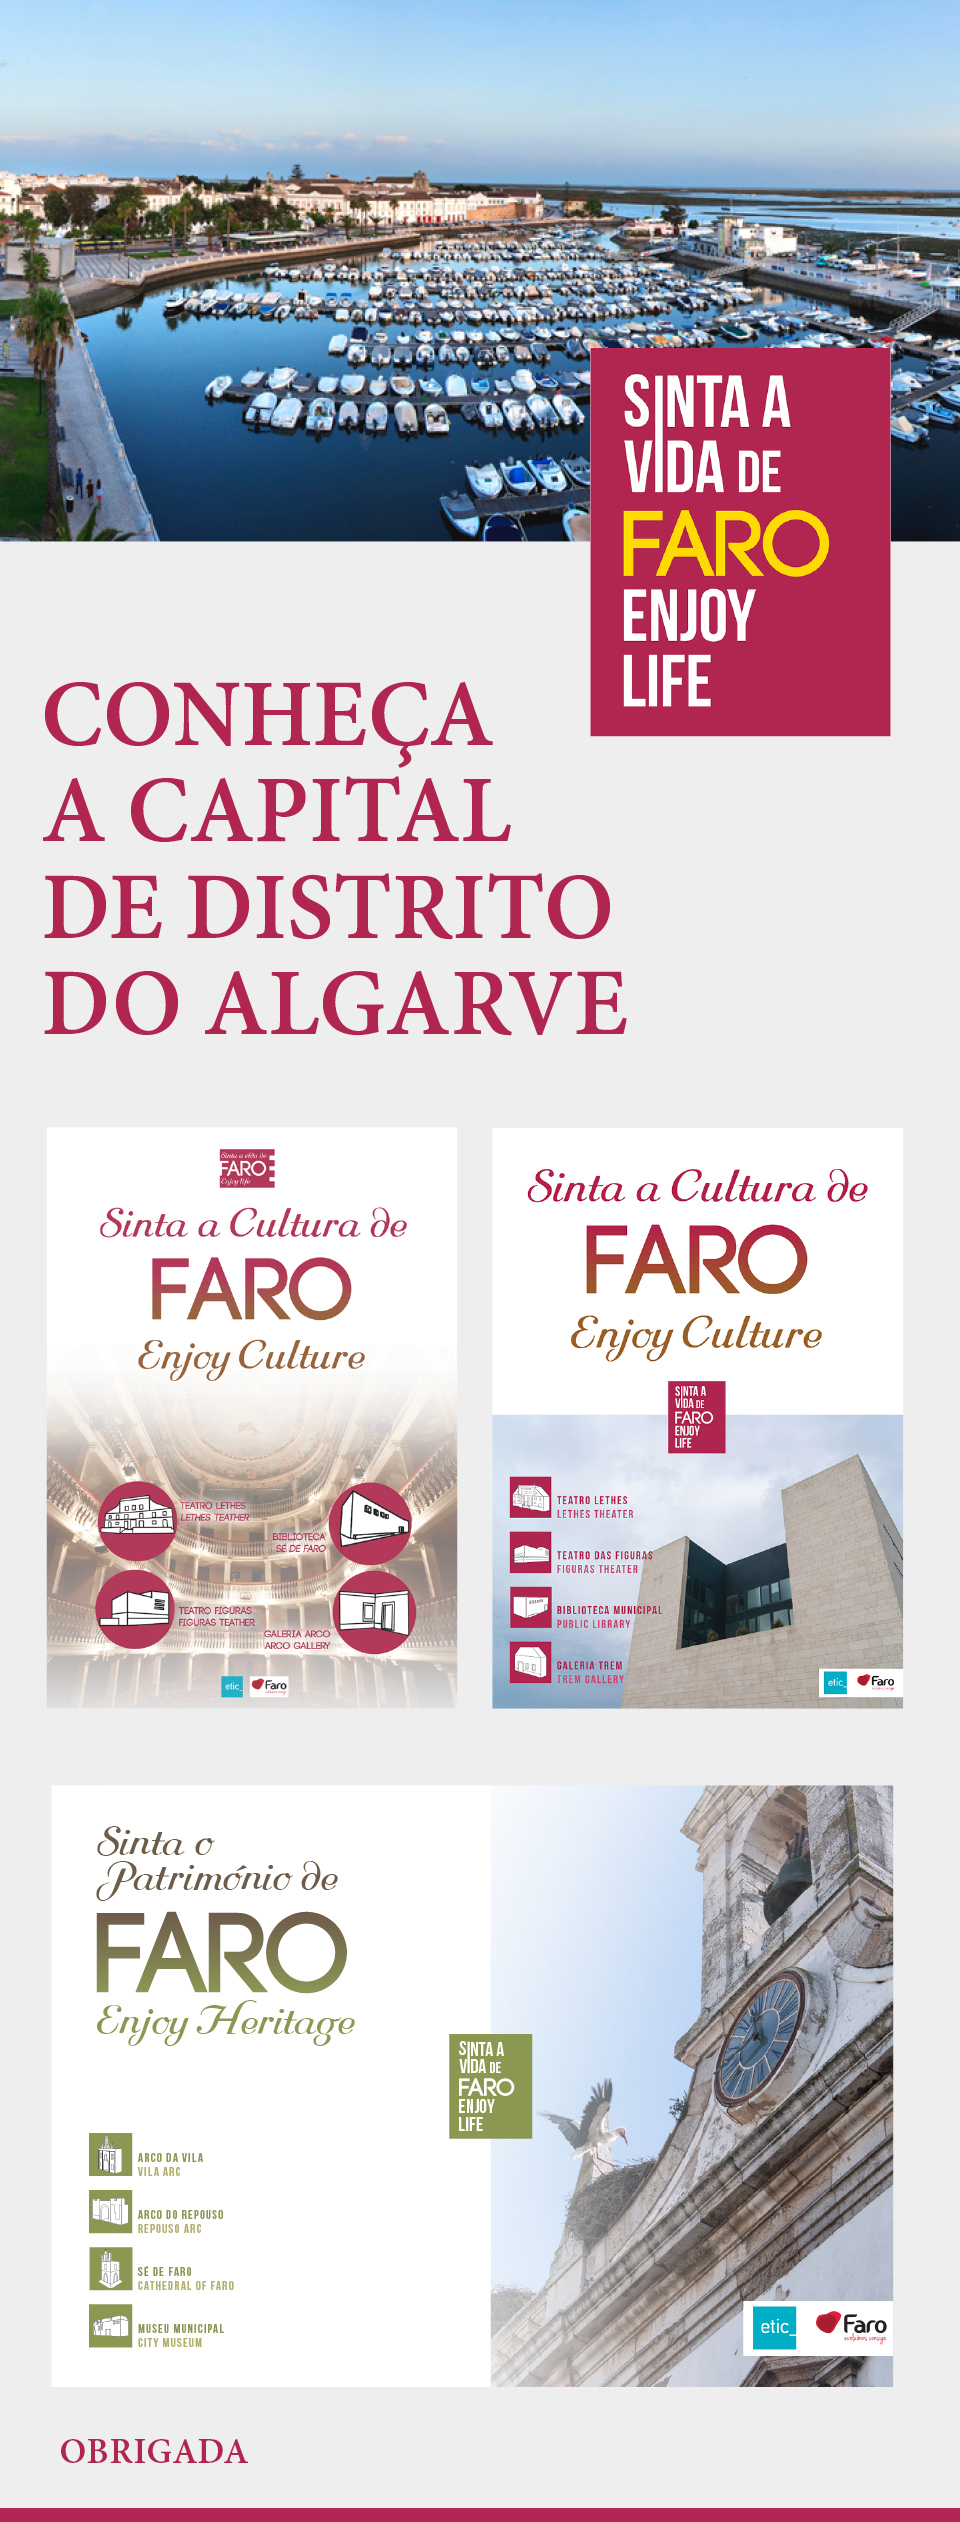 faro city Algarve